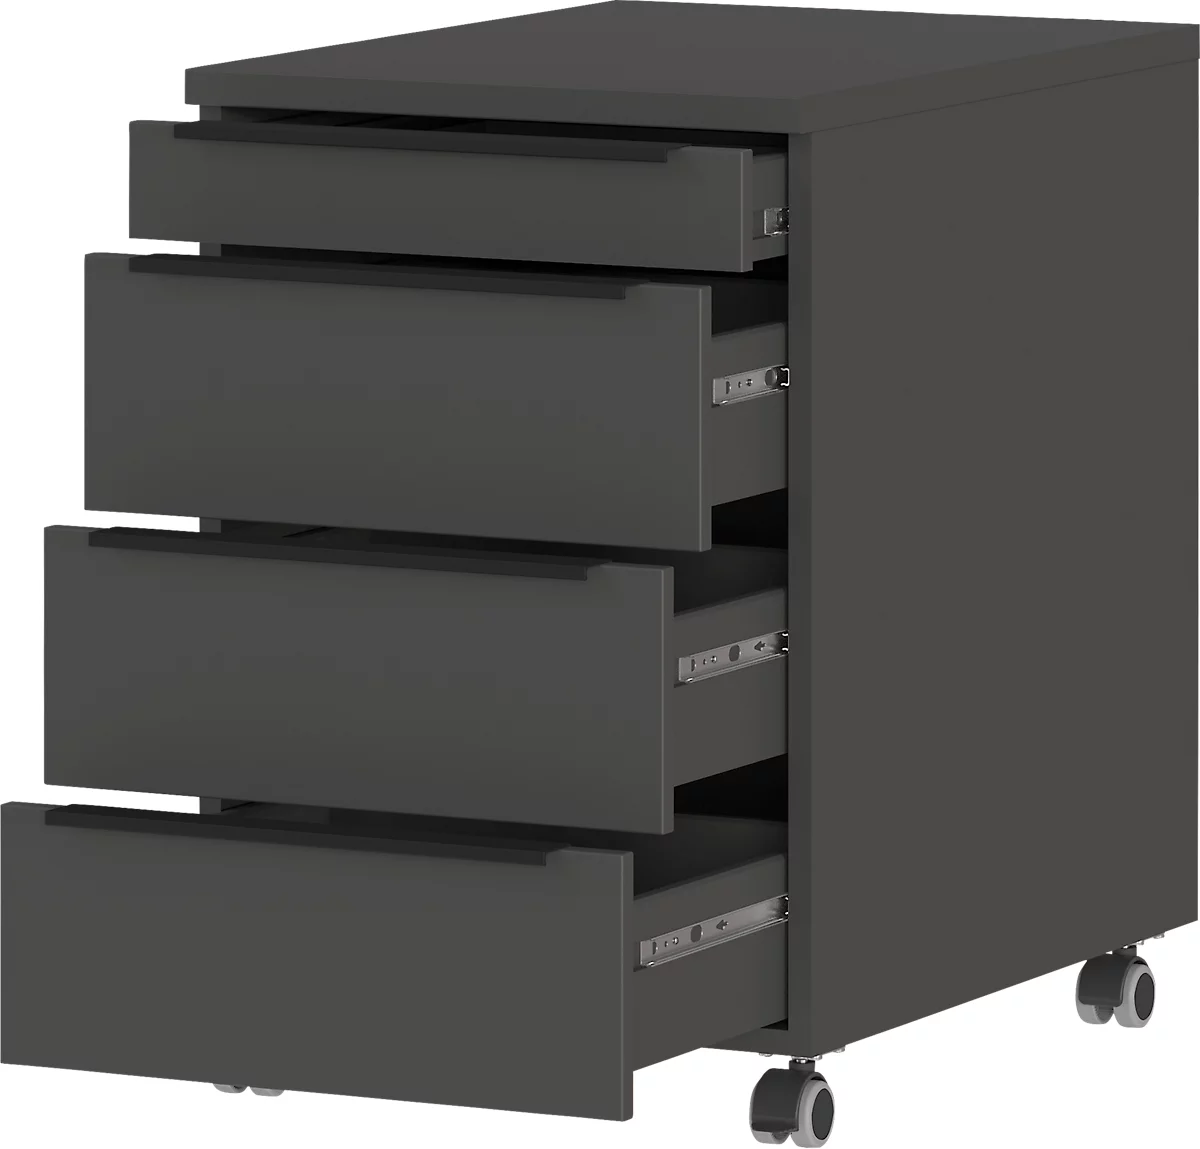 Rollcontainer, 4 Schubladen inkl. Utensilienfach, B 420 x T 600 x H 630 mm, graphit